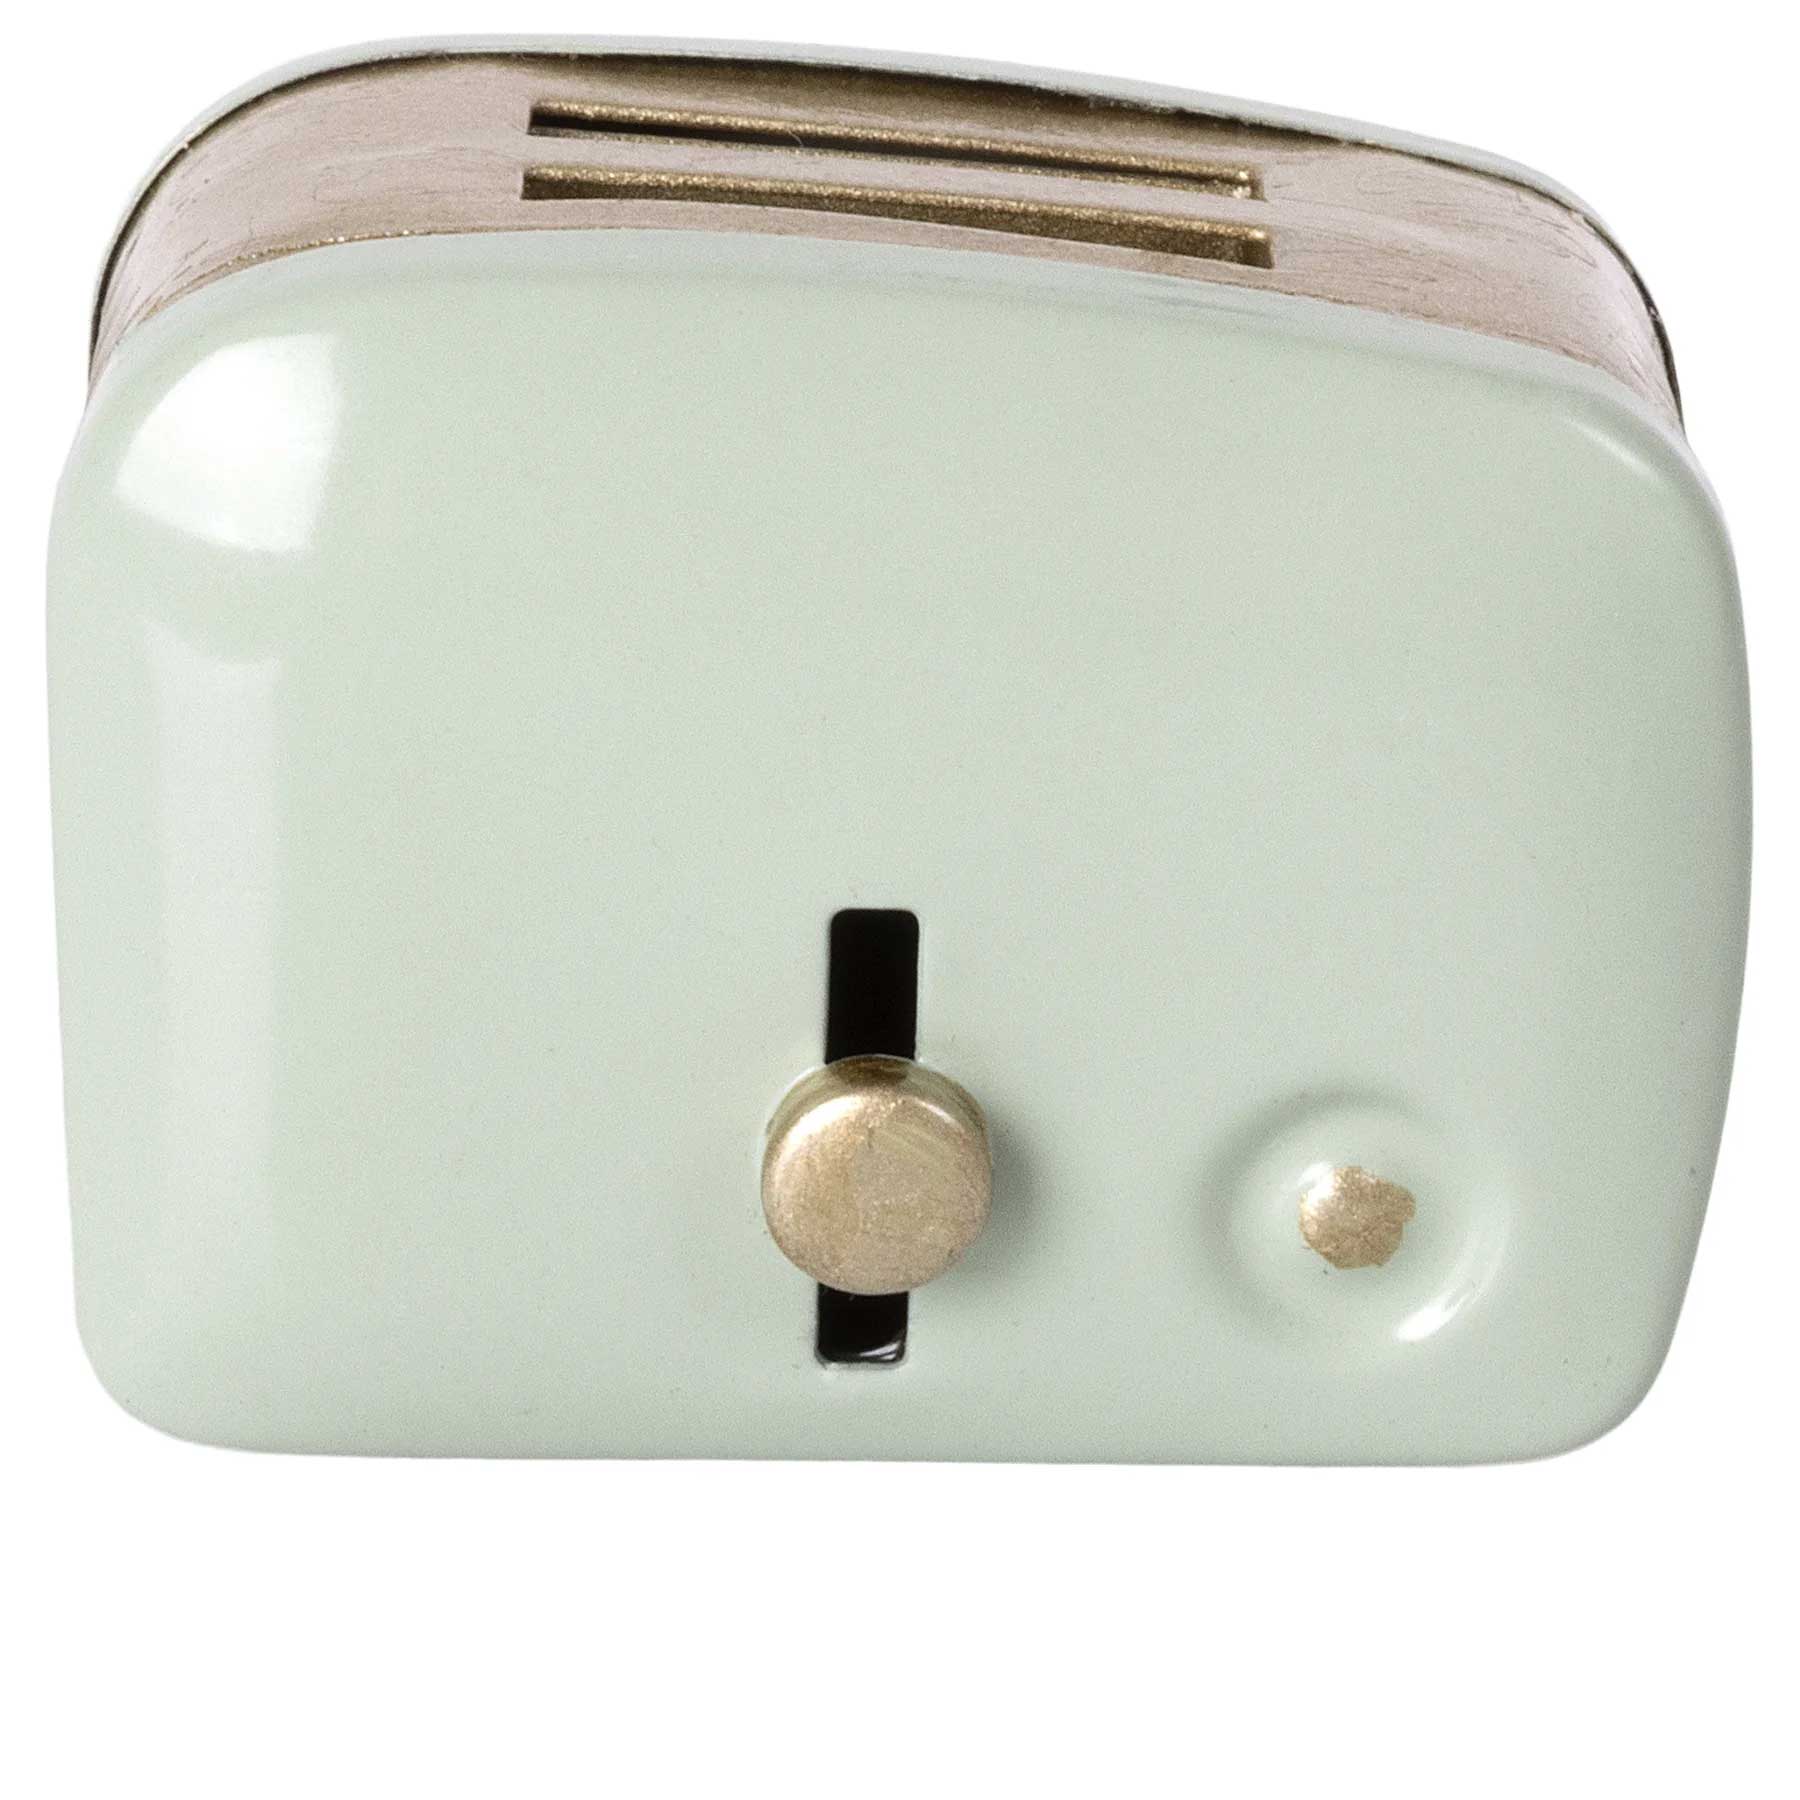 Maileg Miniature Toaster 